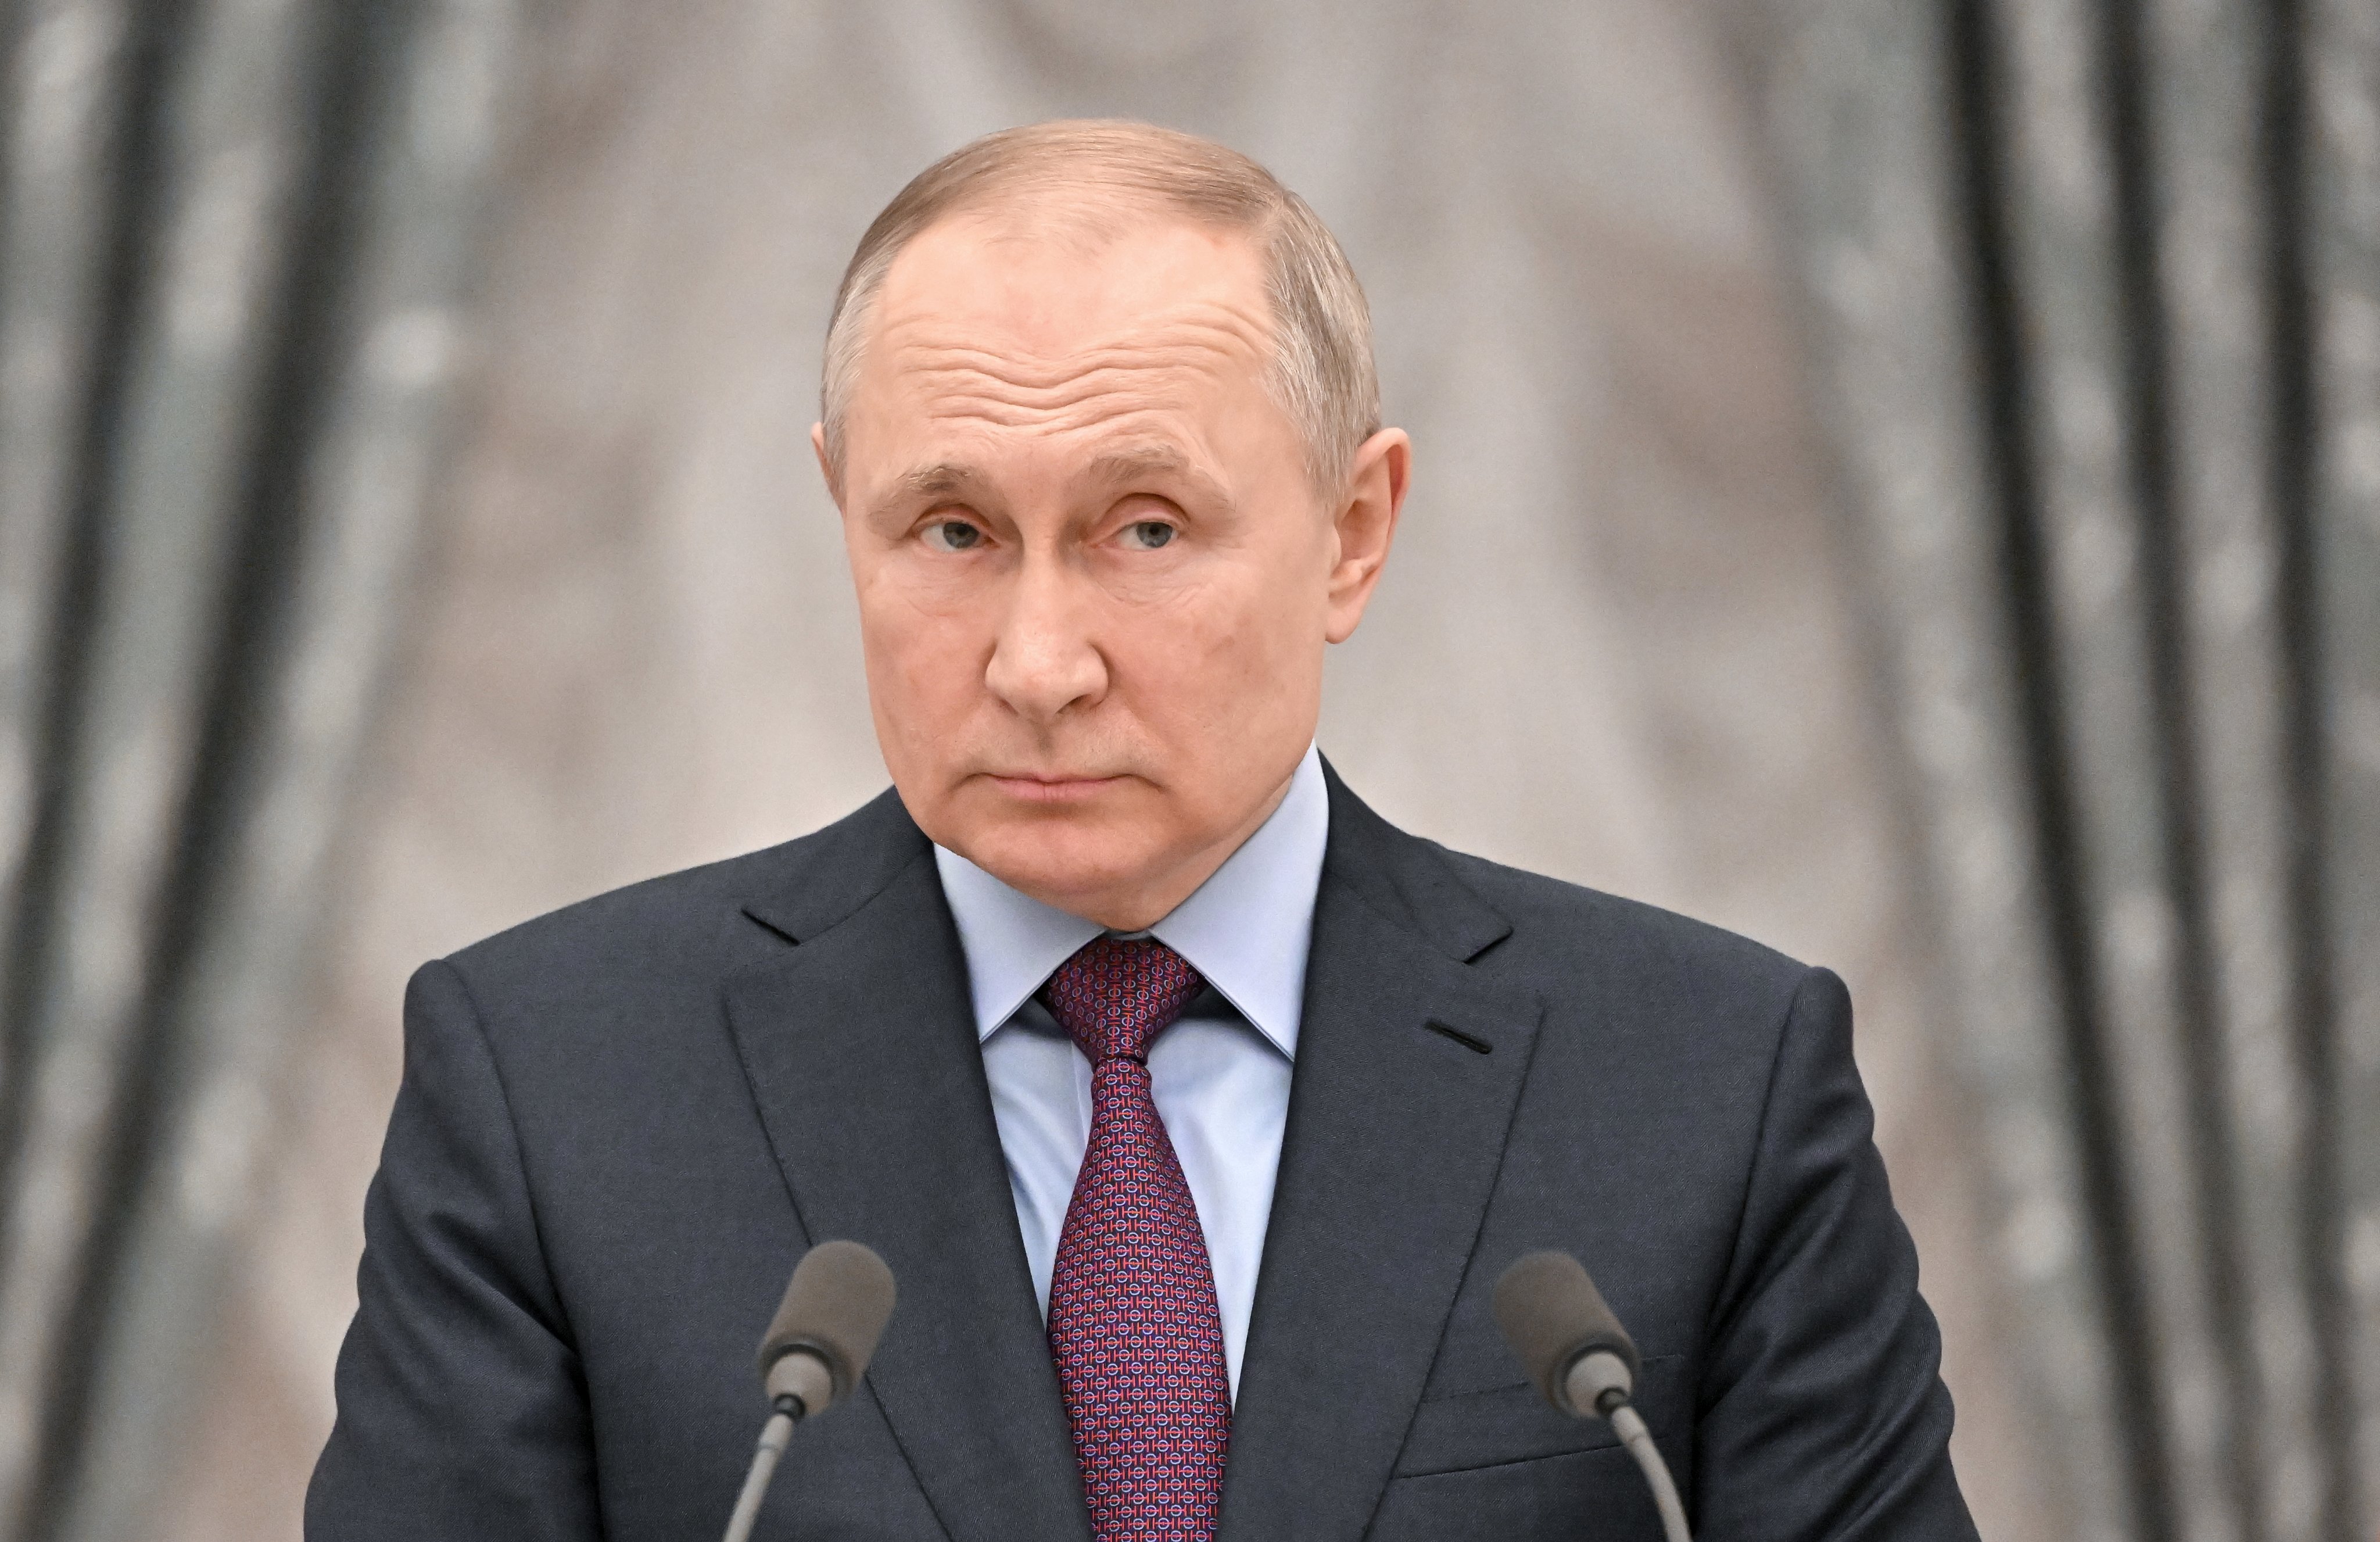 El resultado de la guerra tendrá implicancia directa en el futuro del presidente ruso